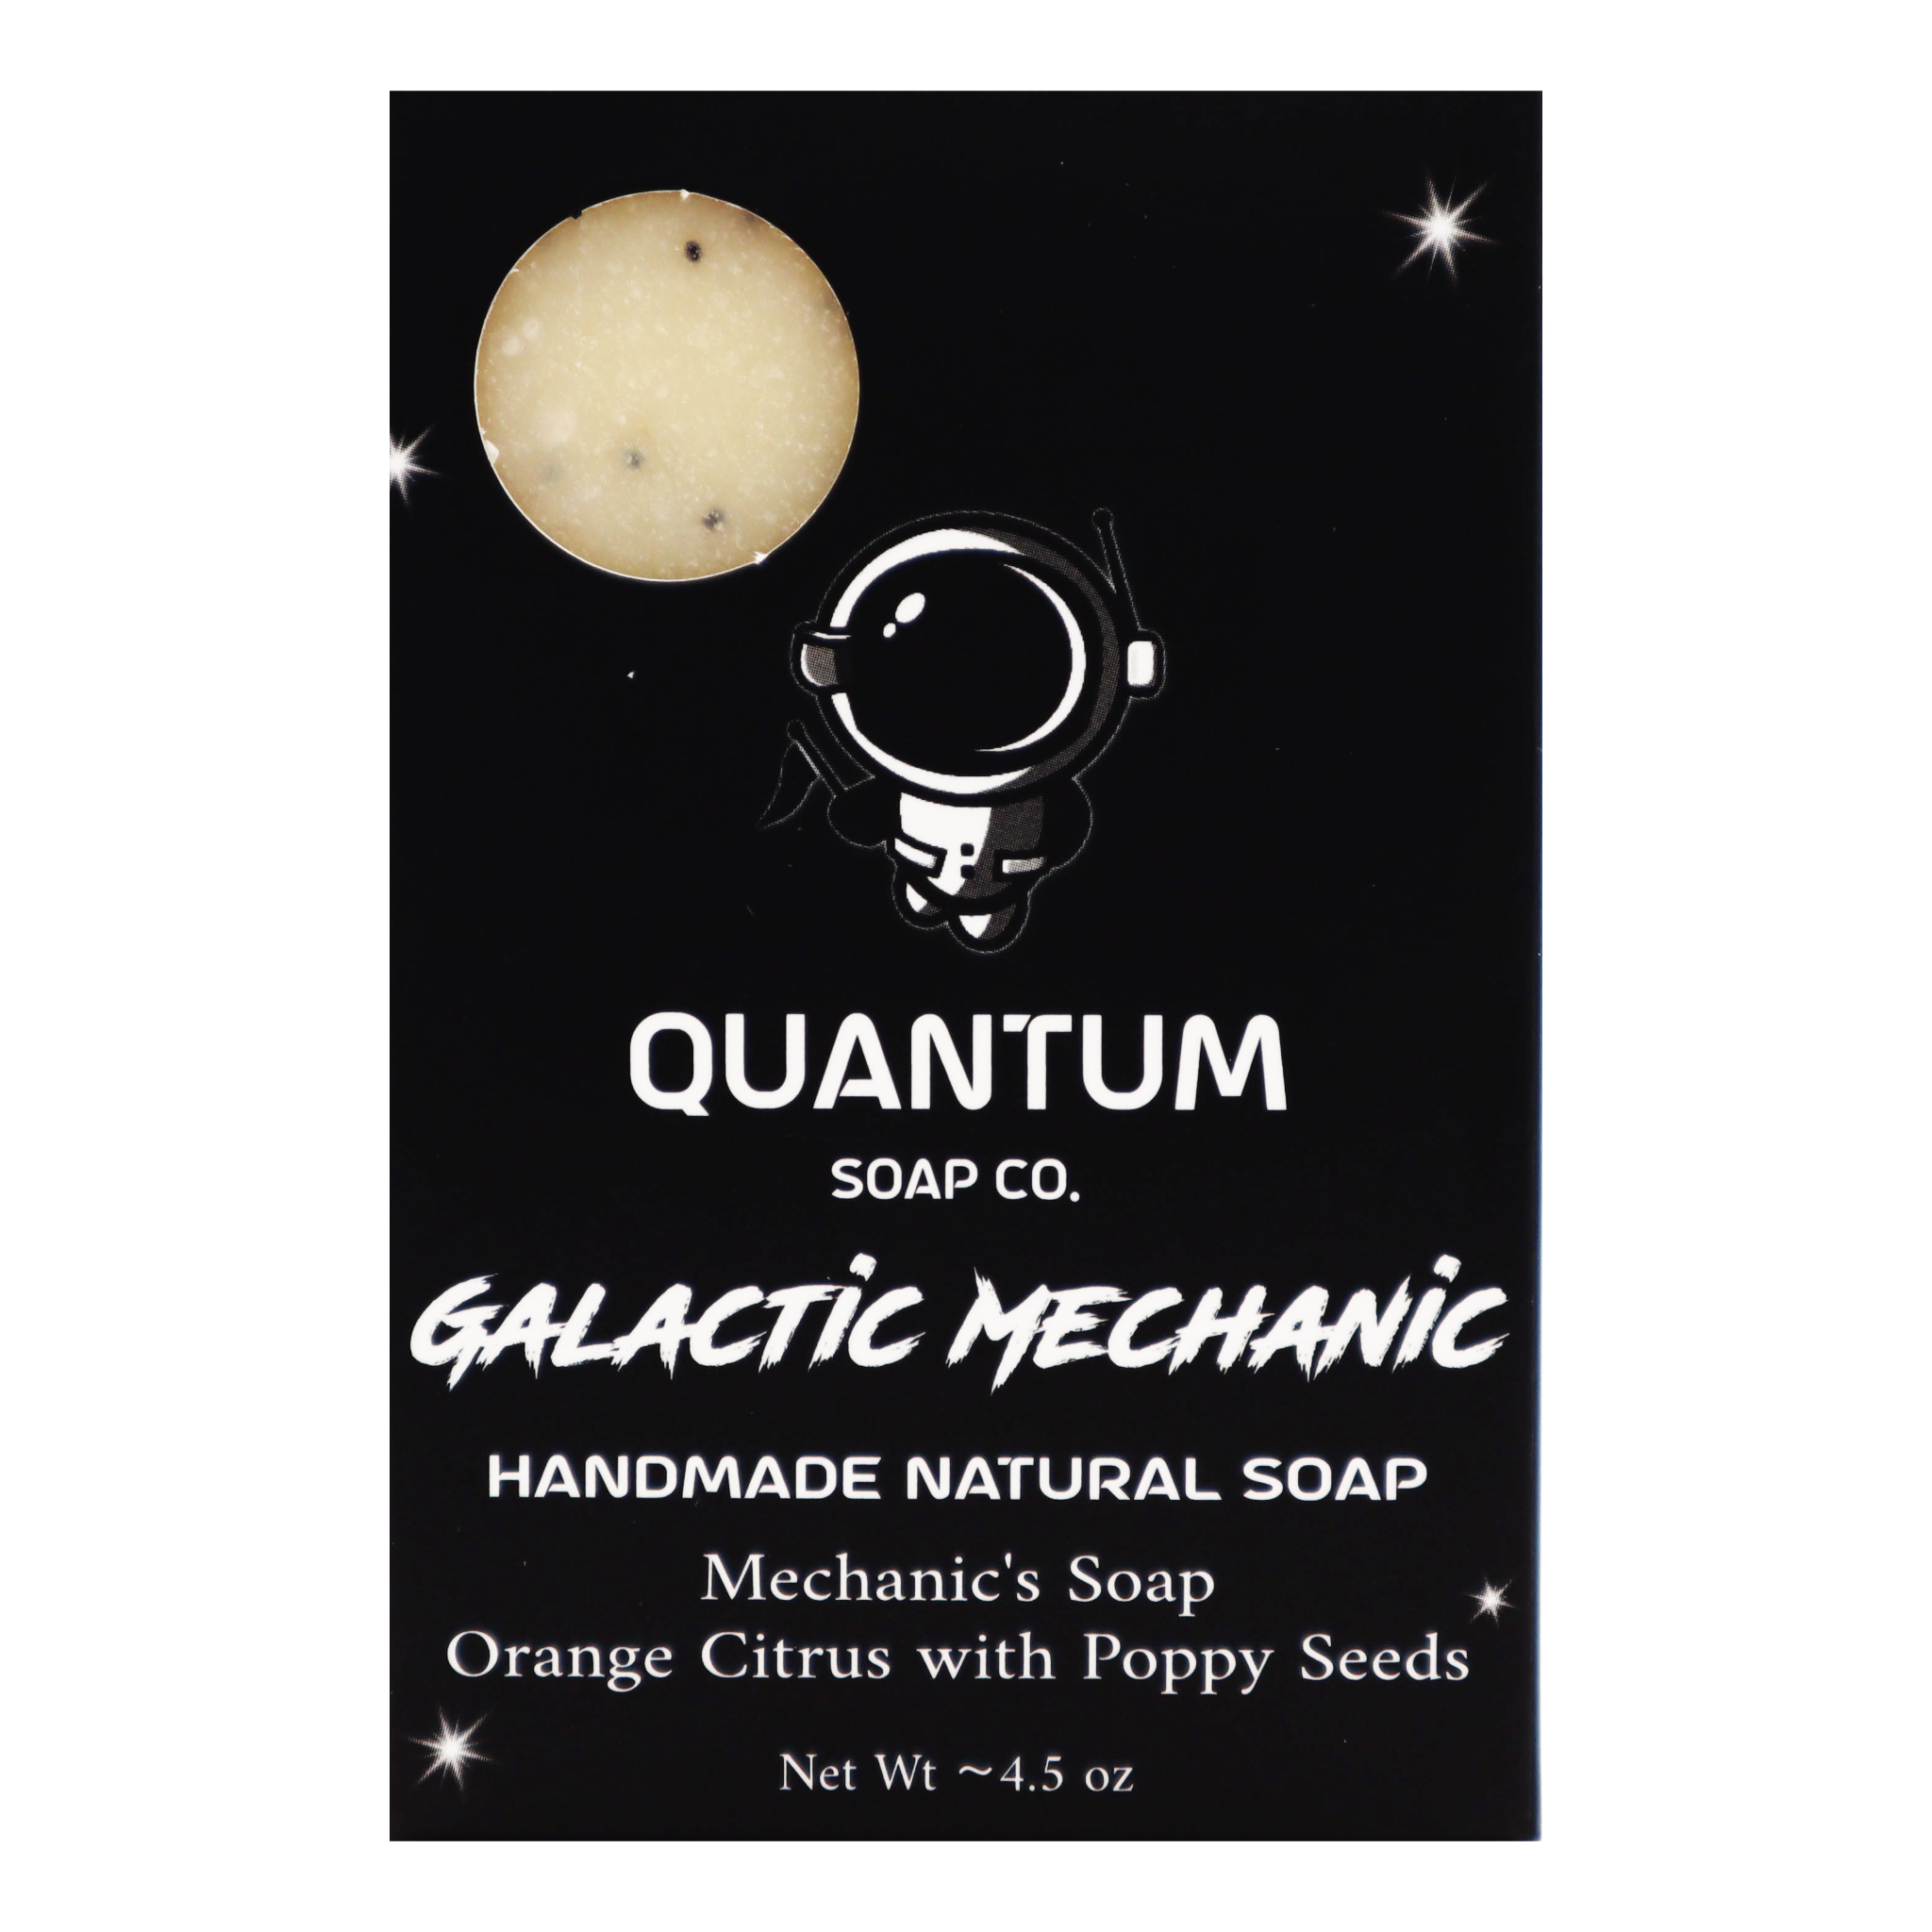 Galactic Mechanic – Quantum Soap Co.